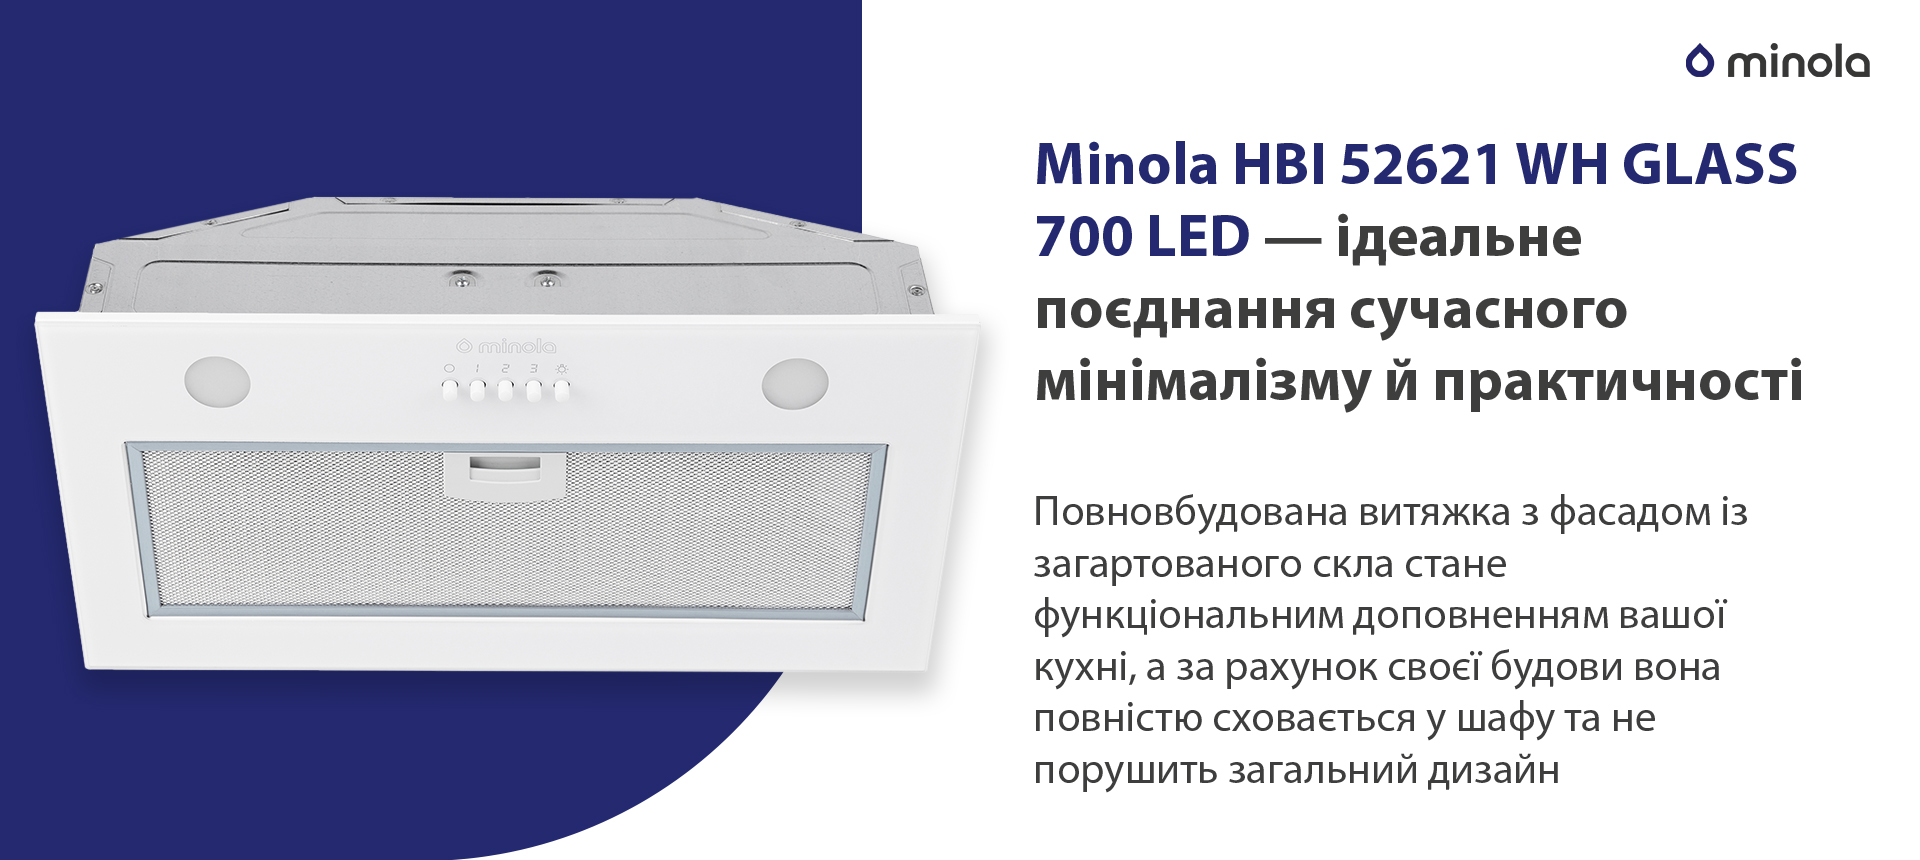 Minola HBI 52621 WH GLASS 700 LED в магазине в Киеве - фото 10